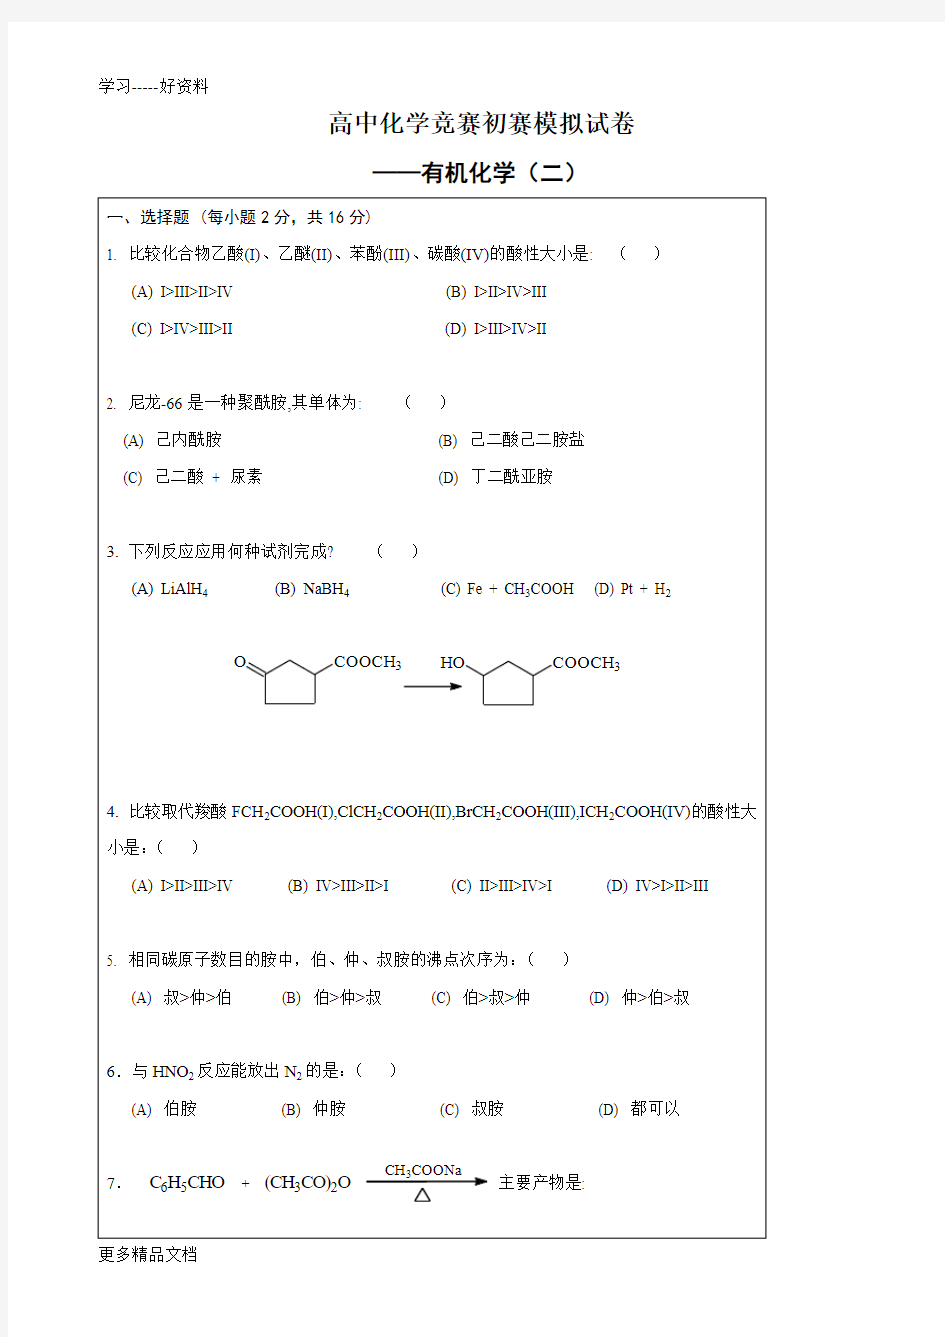 高中化学竞赛初赛模拟试卷3——有机化学(二)教学提纲